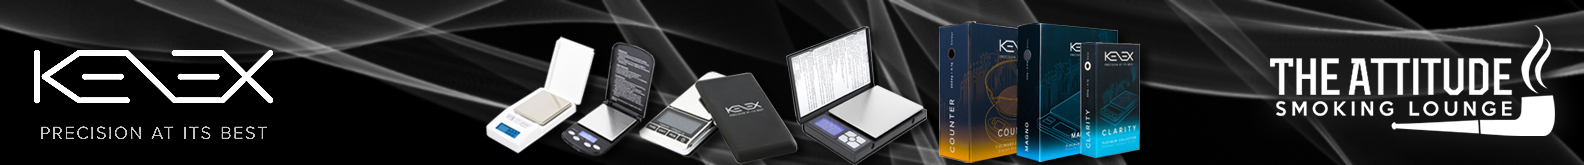 Kenex Digital Scales